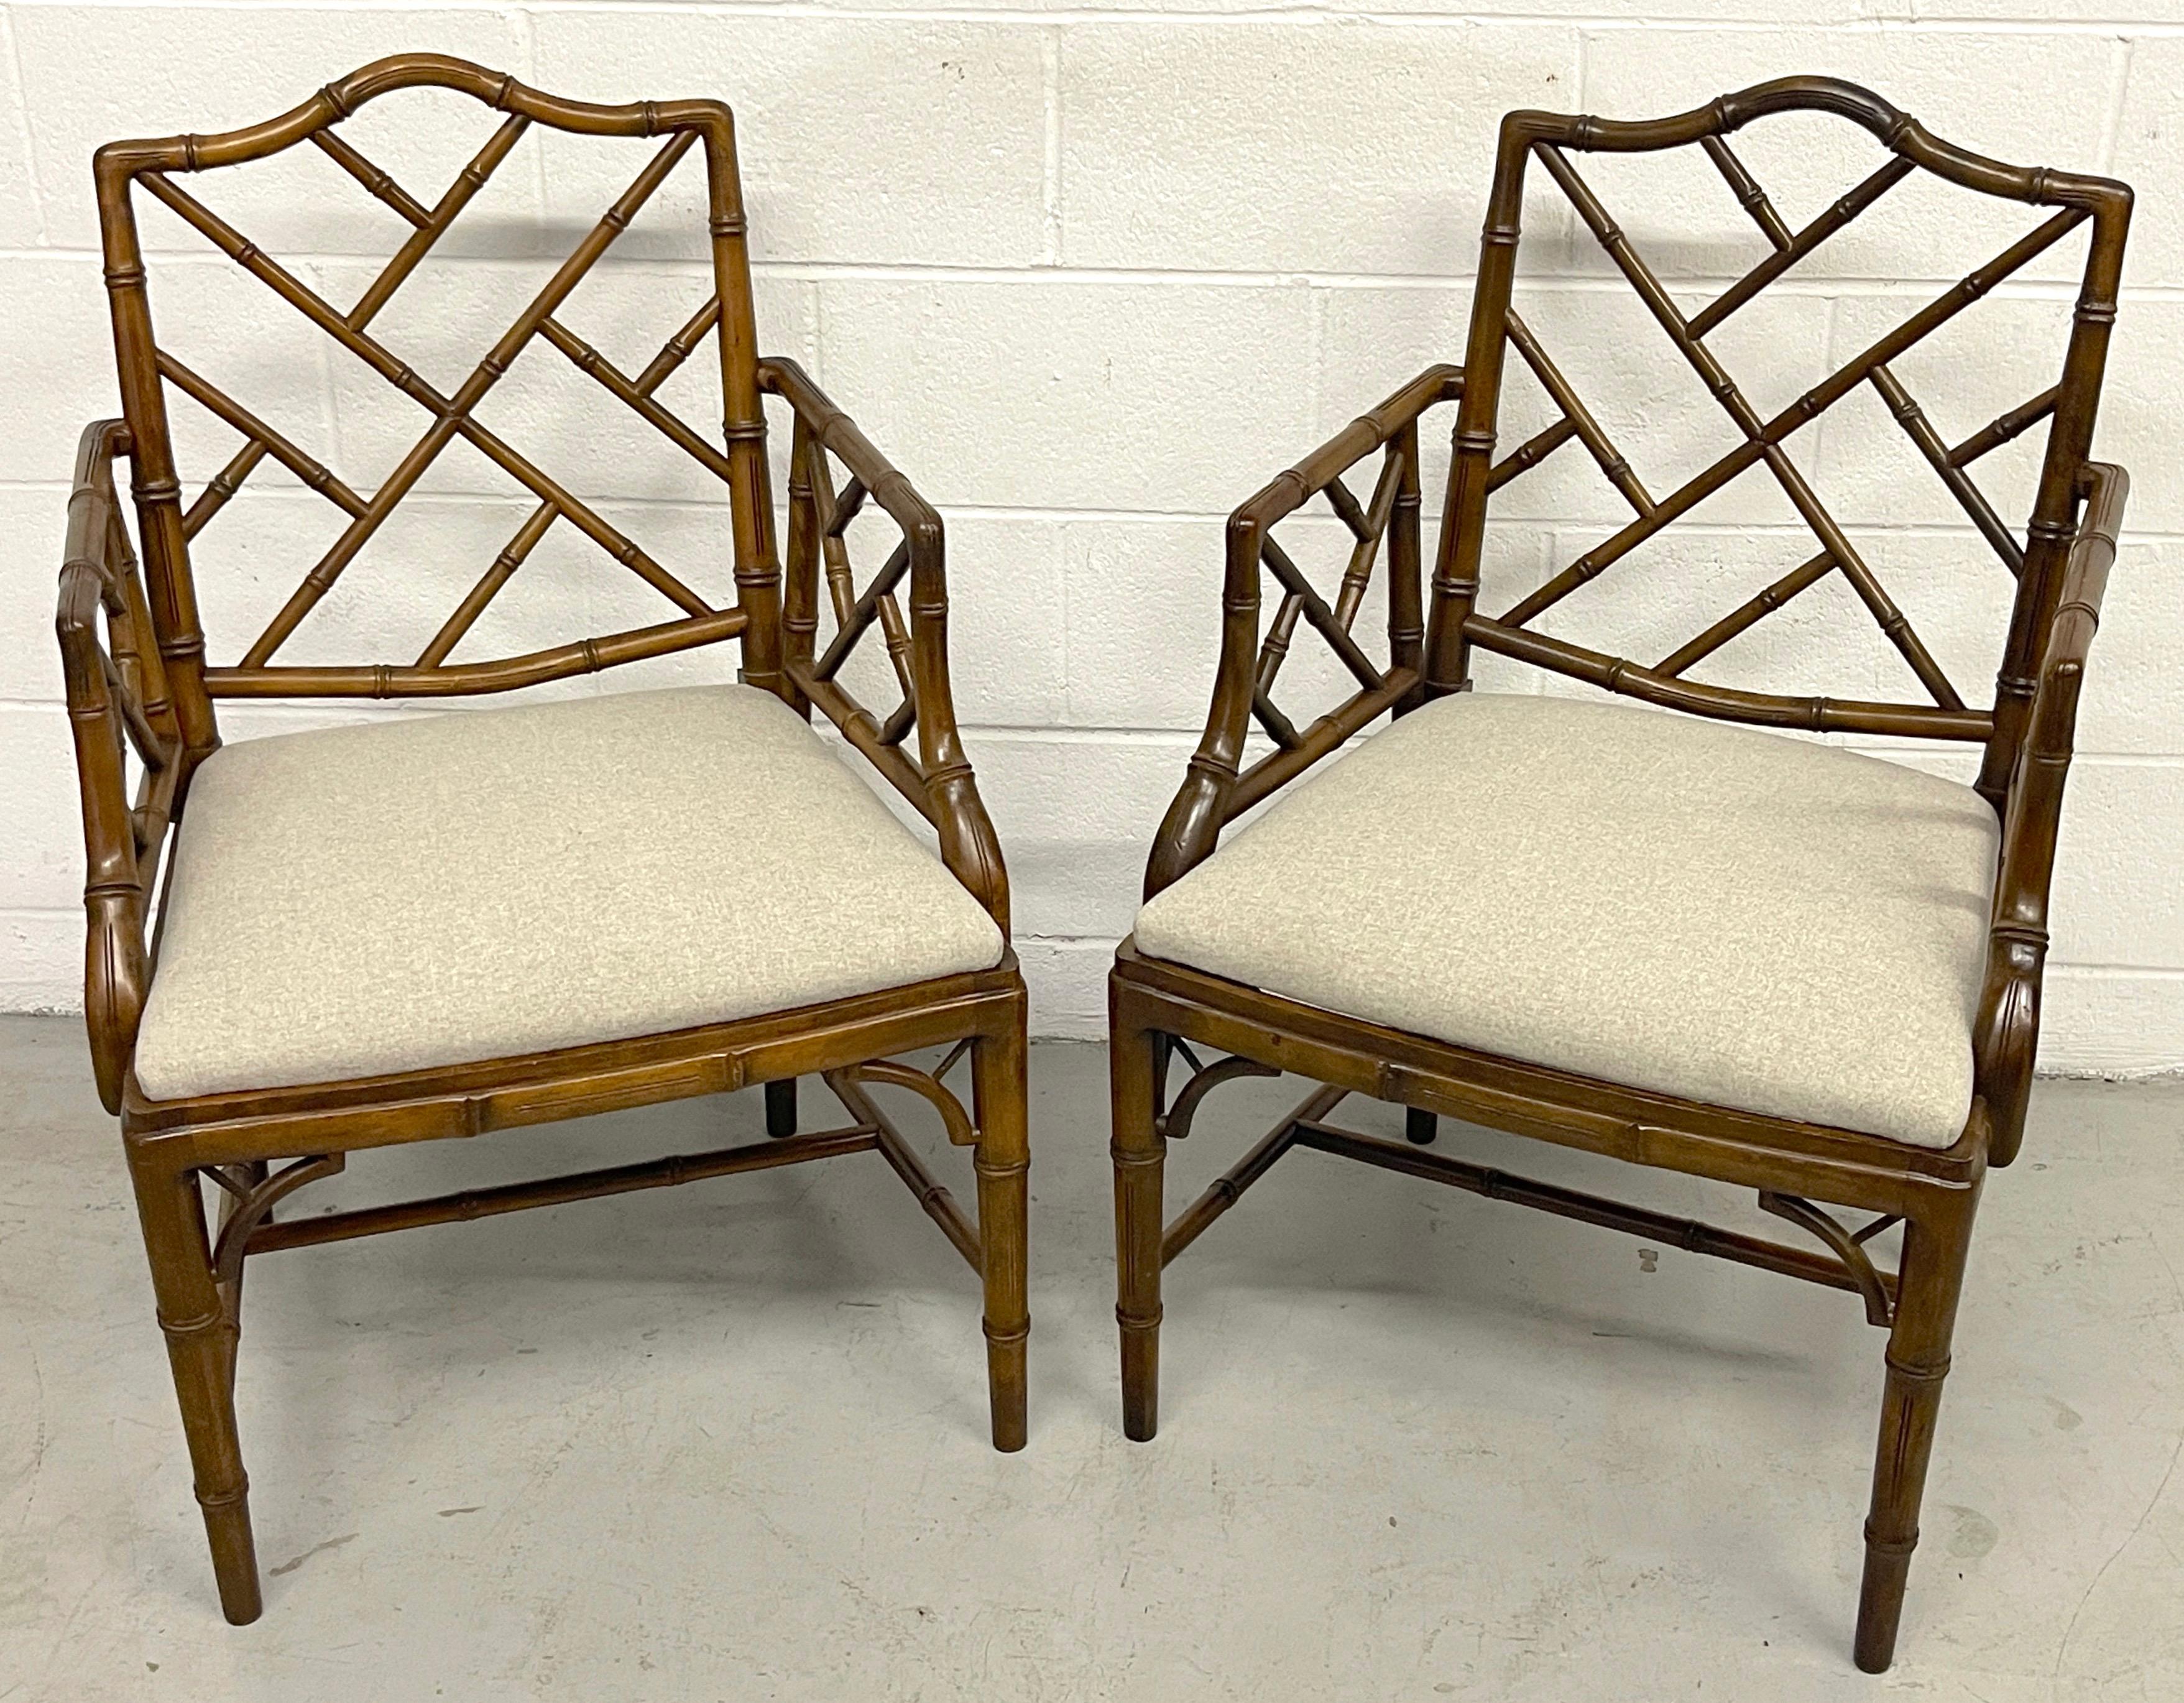 Paire de fauteuils chinois de style Chippendale en faux bambou avec sièges en mélange de cachemire
Angleterre, Vers la fin du 20e siècle 

Une exquise paire de fauteuils à accoudoirs en faux bois d'acajou sculpté dans le goût chinois de